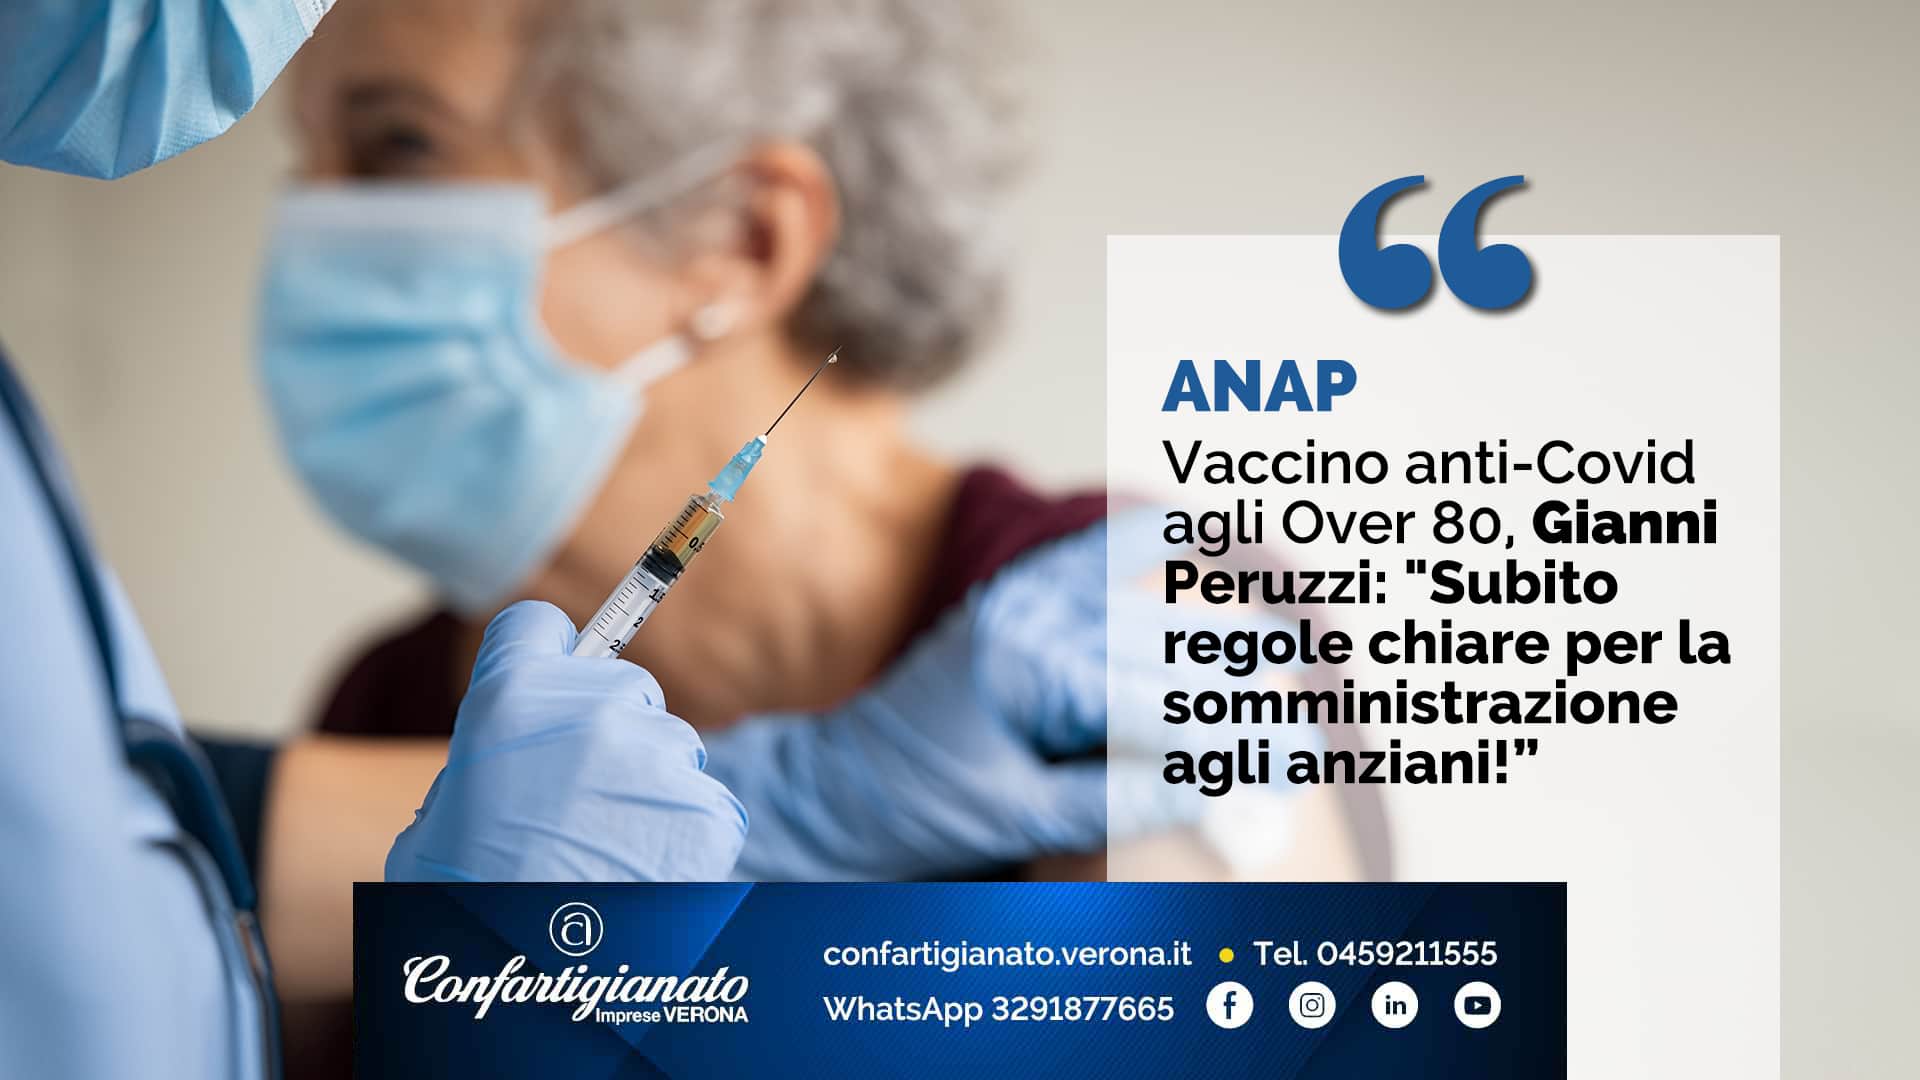 ANAP – Vaccino anti-Covid agli Over 80, Peruzzi: "Subito regole chiare per la somministrazione agli anziani!”